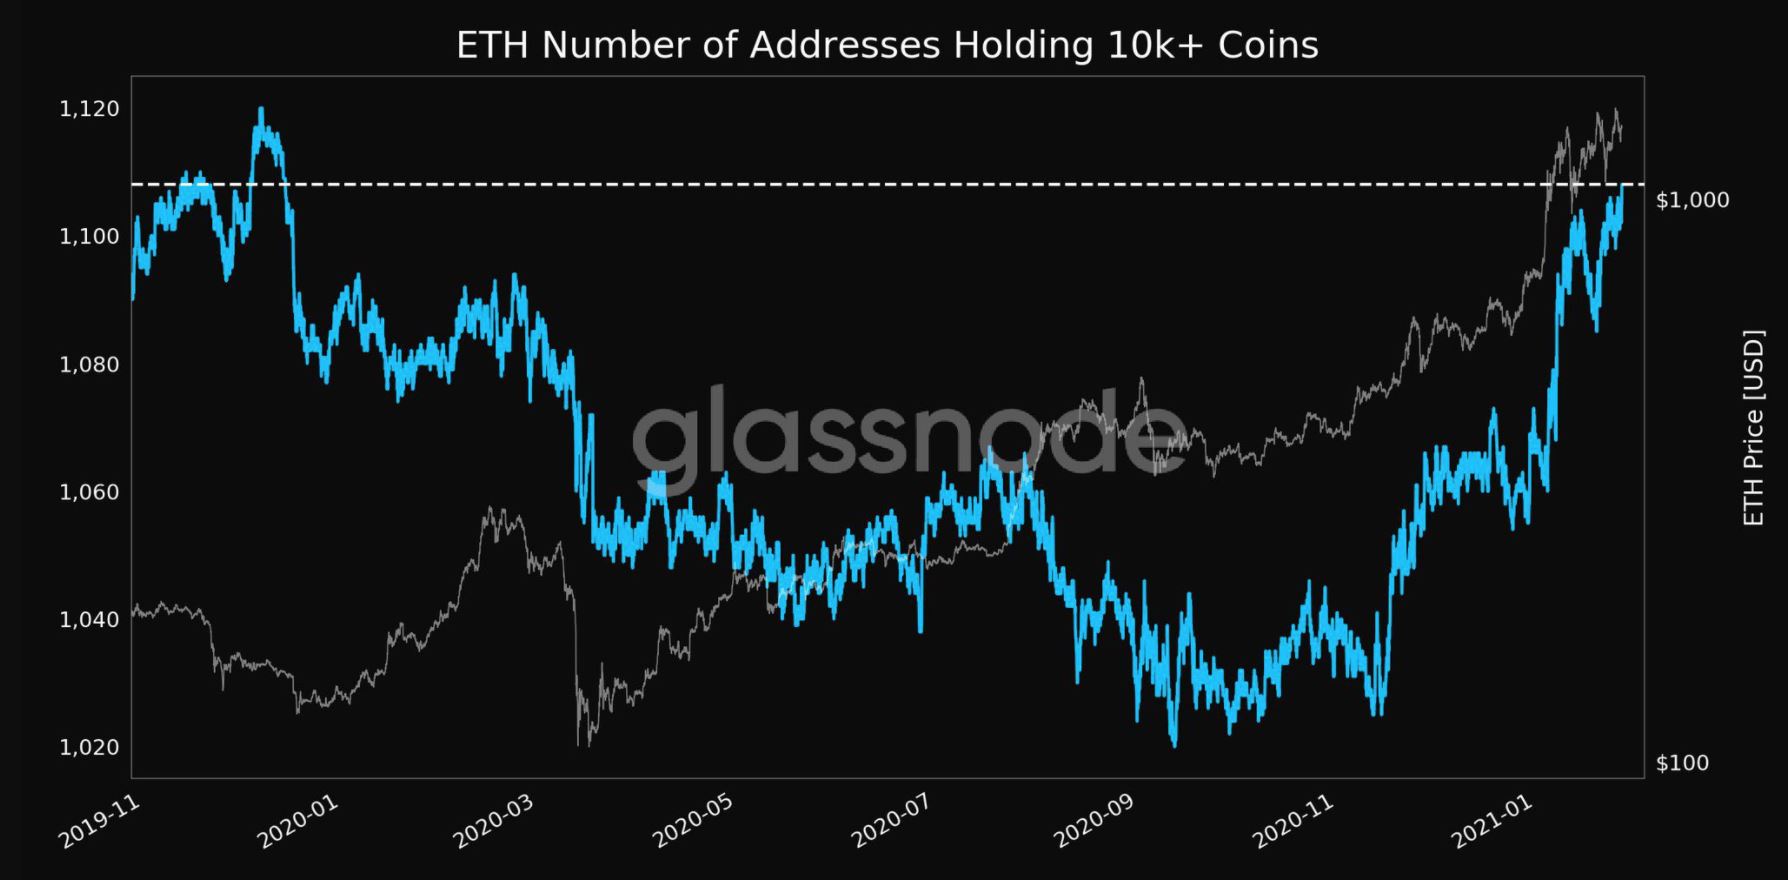 ¿Debería preocuparse por la última caída de precios de Ethereum?